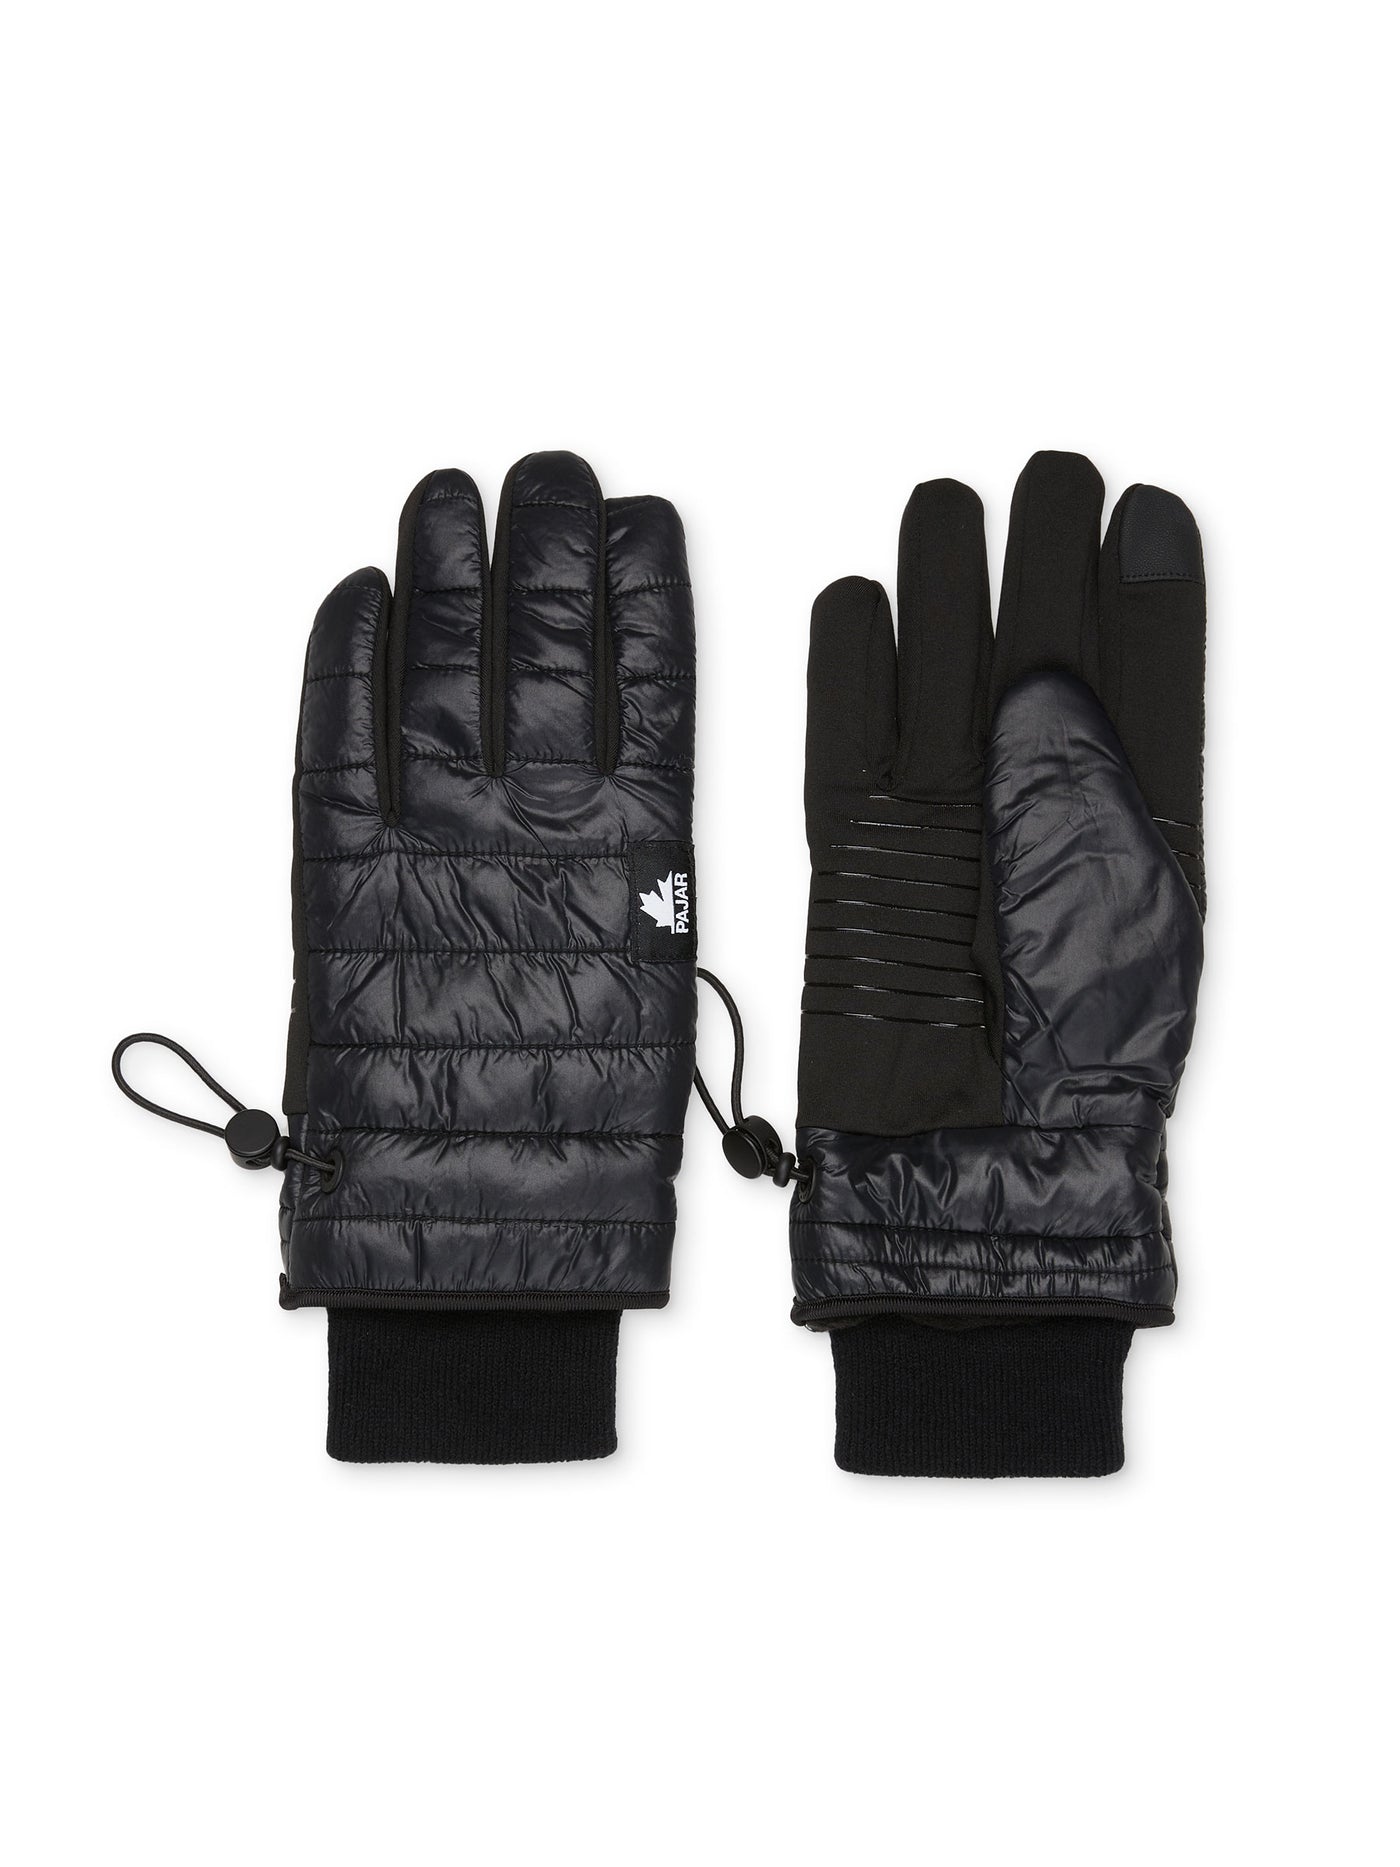 Mckay Men's Gloves